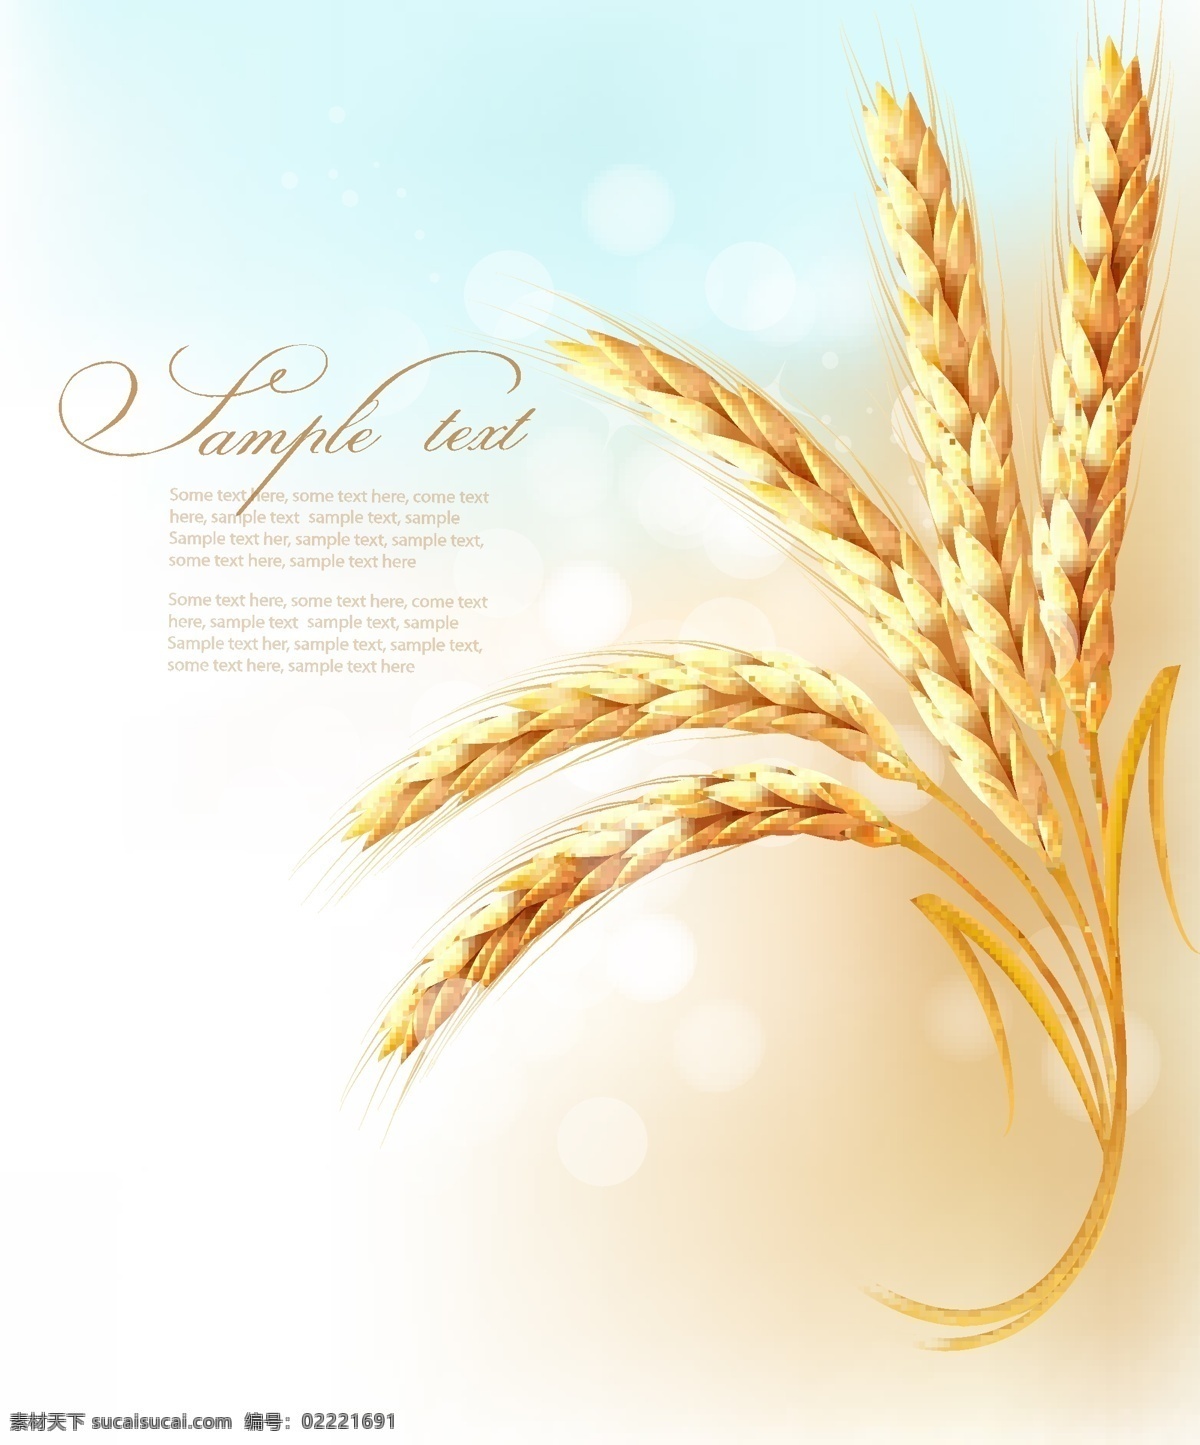 麦穗小麦 麦穗 小麦 麦子 金色 手绘 矢量 餐饮美食 生活百科